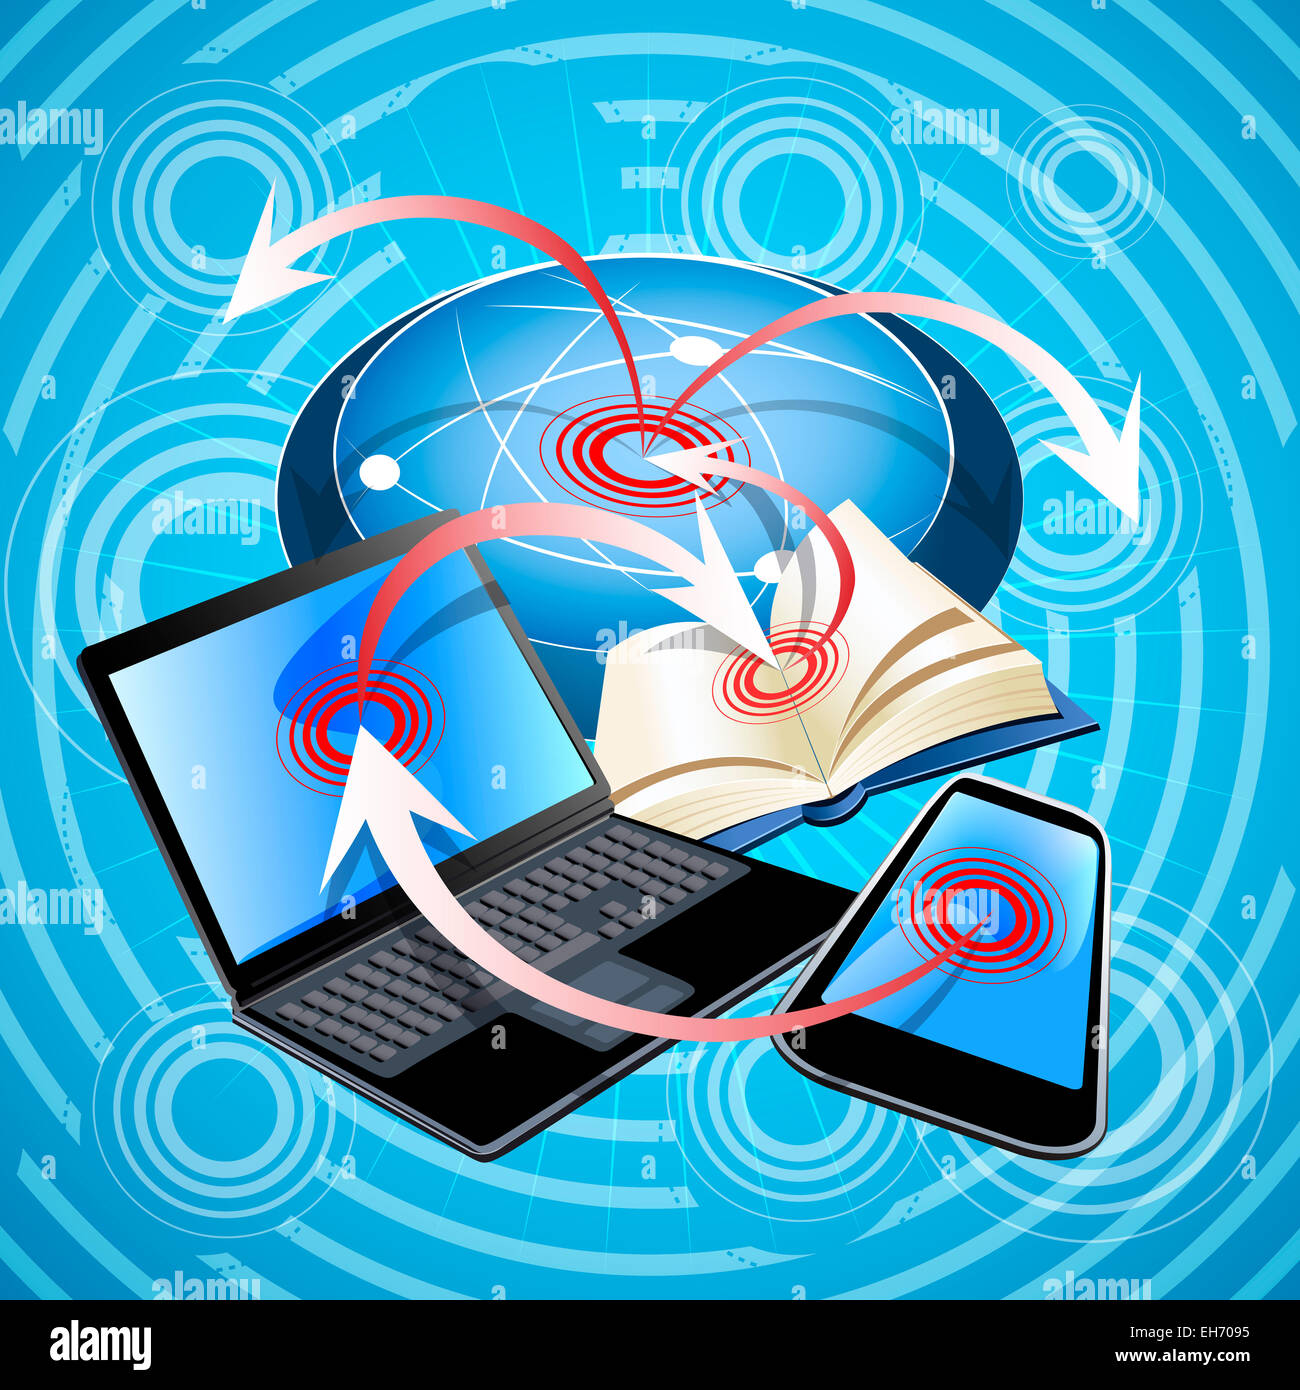 Abbildung mit Laptop, Handy und Buch zeigt Möglichkeiten der Suche nach den notwendigen Informationen in der modernen Welt Stockfoto